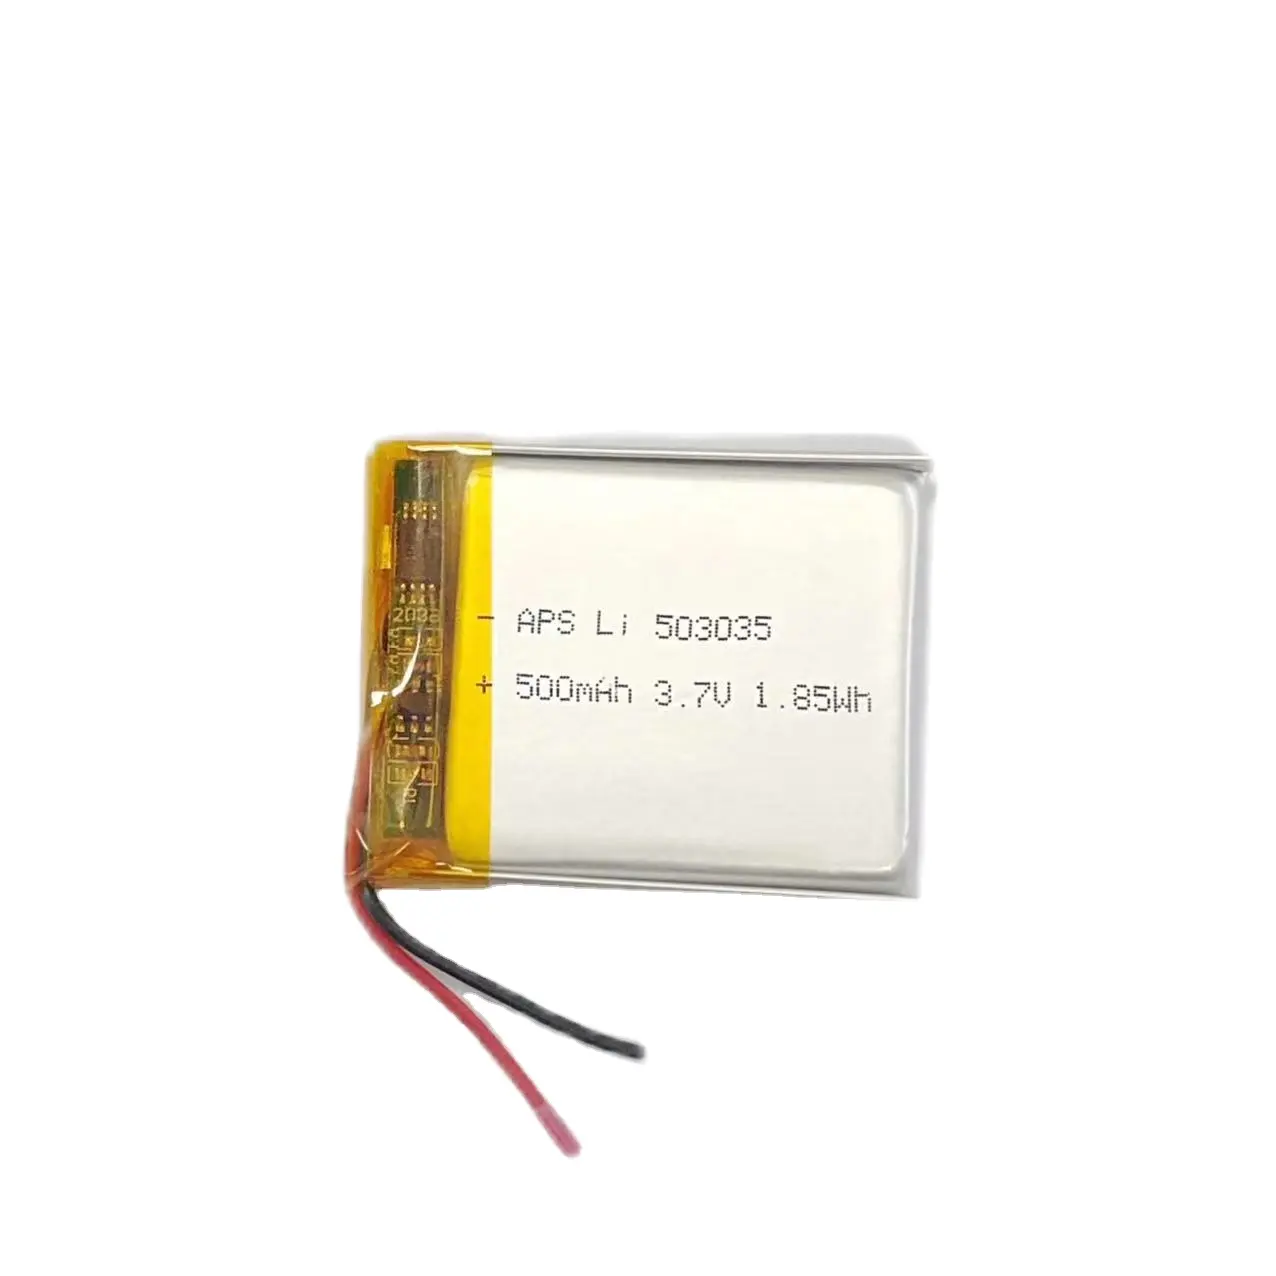 ली पो पाउच सेल 503035 3.7V 500mAh लिथियम आयन बहुलक बैटरी बिजली के उत्पादों के लिए रिचार्जेबल बैटरी पैक